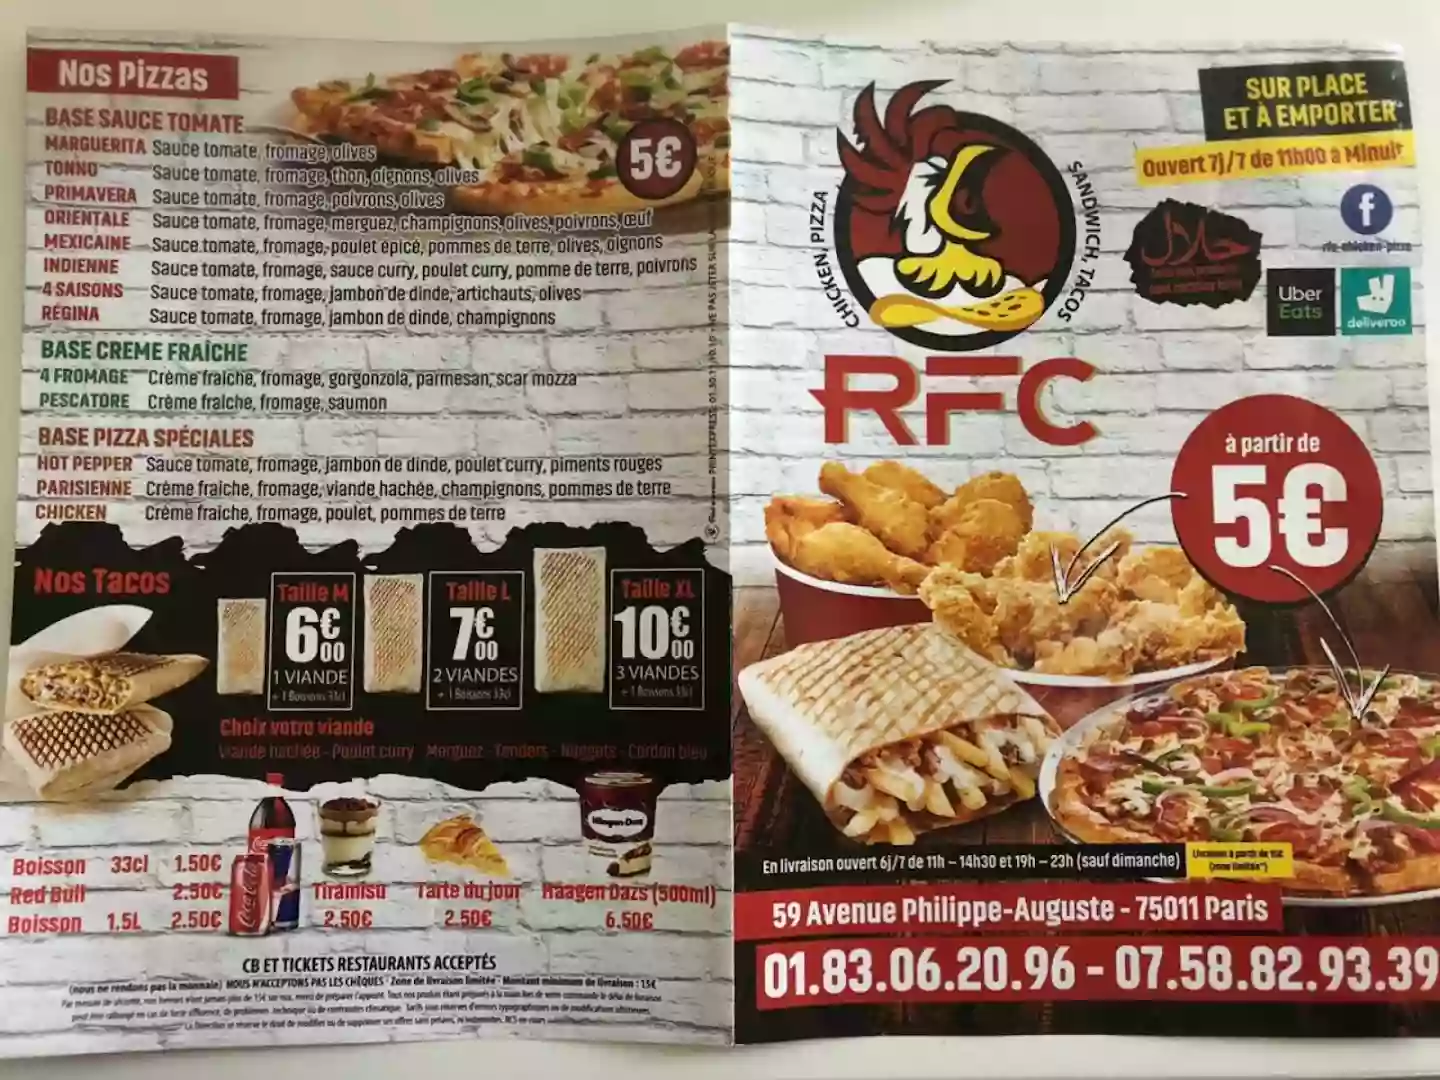 RFC Chicken - Pizza